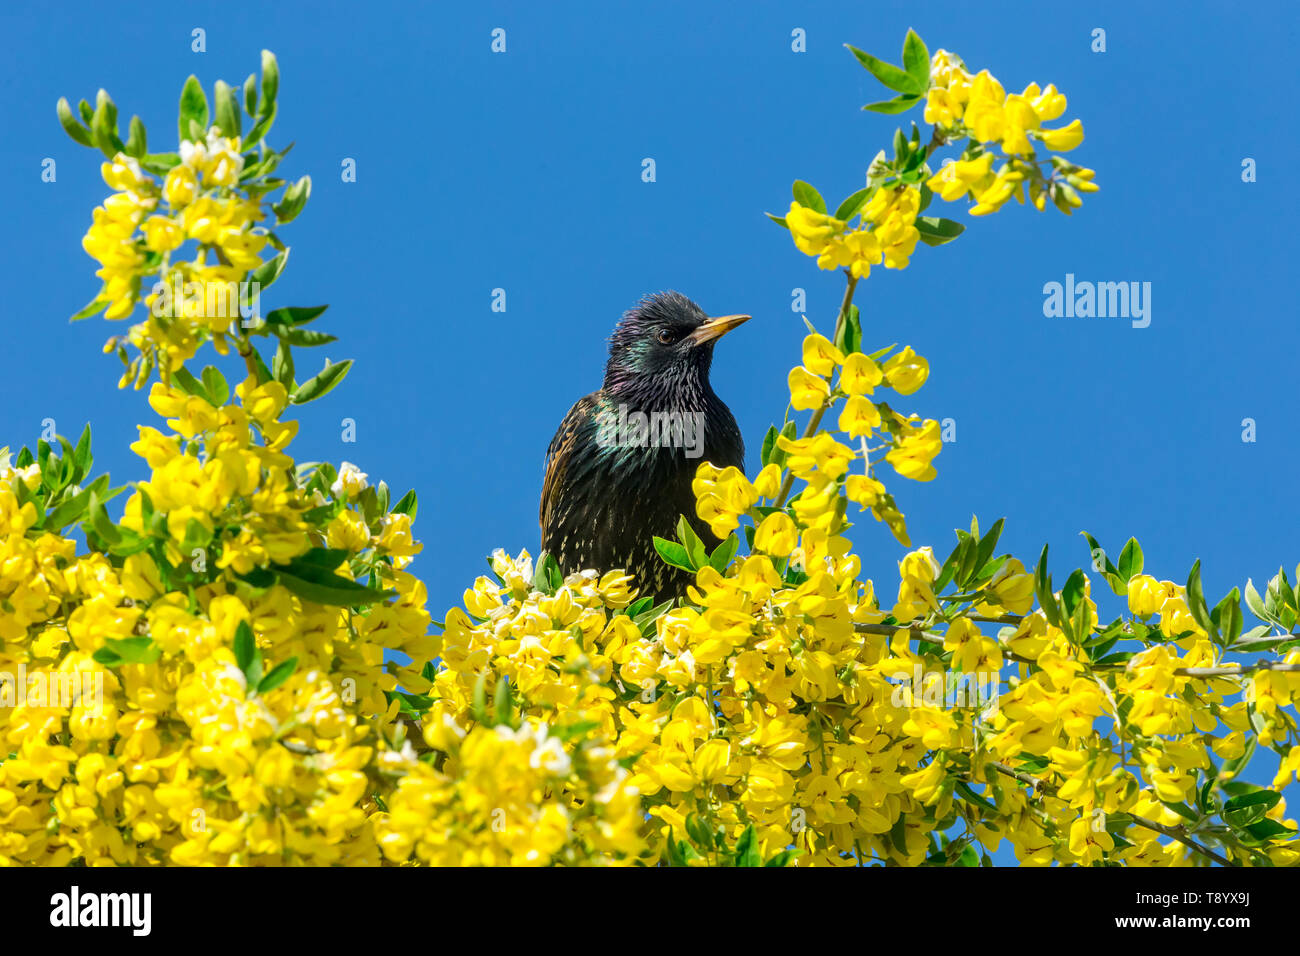 Starling, nom scientifique : Sturnus vulgaris. perché dans l'arbre Laburnum avec fleurs jaune vif. Nettoyer le fond de ciel bleu. Face à la droite. Paysage Banque D'Images